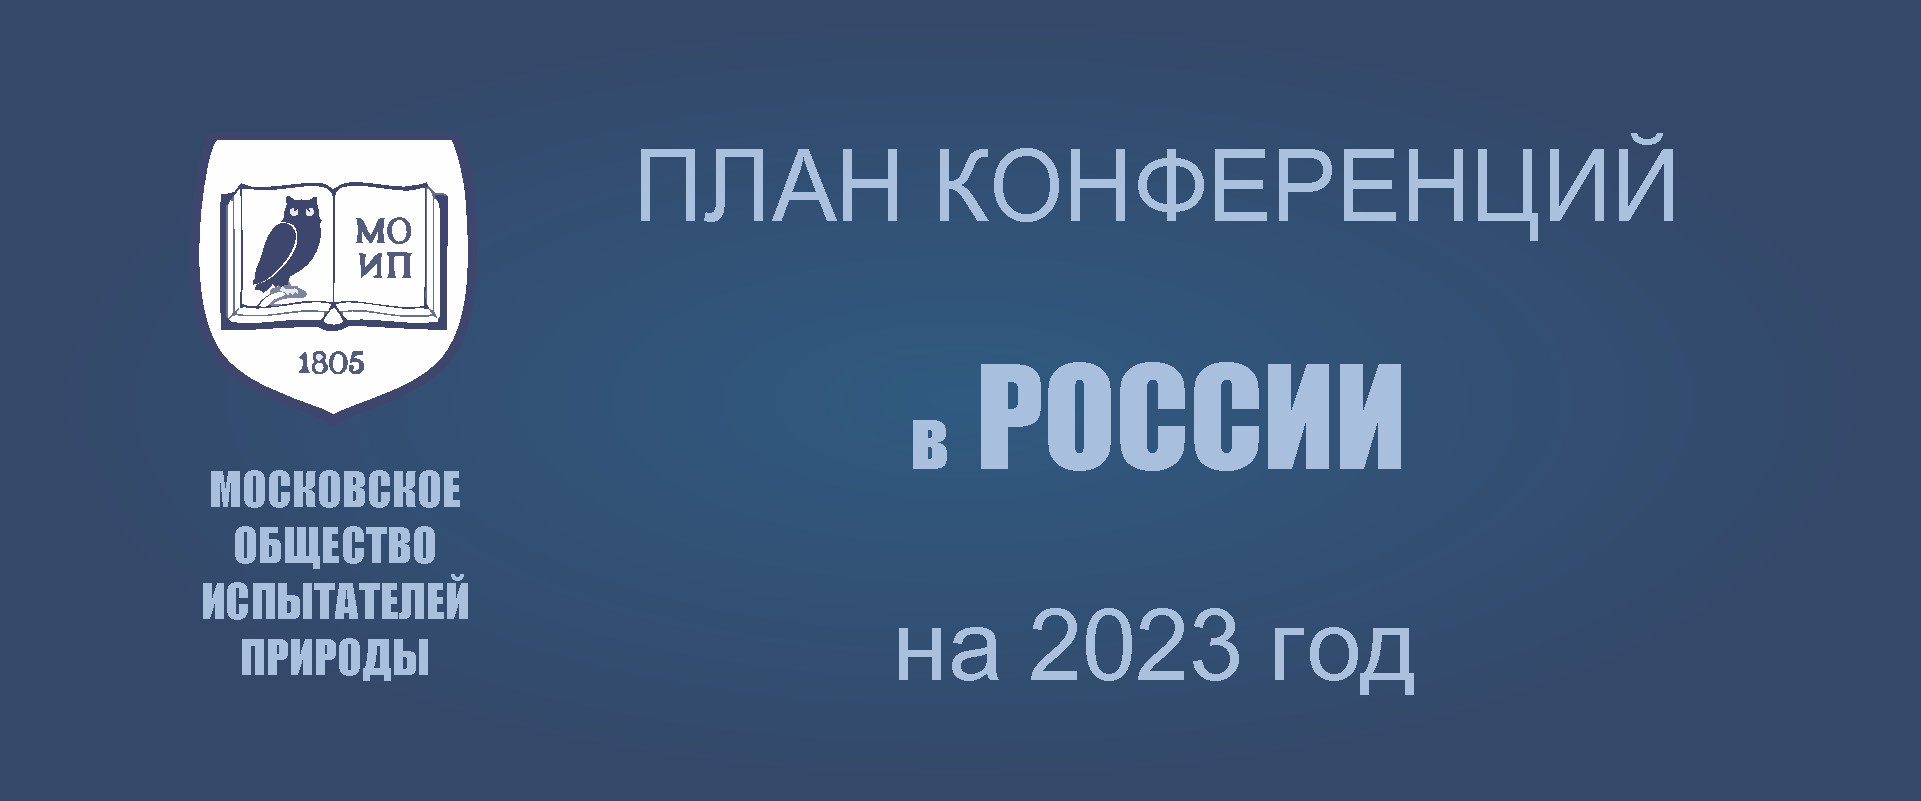 ПРЕДСТОЯЩИЕ КОНФЕРЕНЦИИ В РОССИИ (КРОМЕ МОСКВЫ) в 2023 - 2024 г.г.